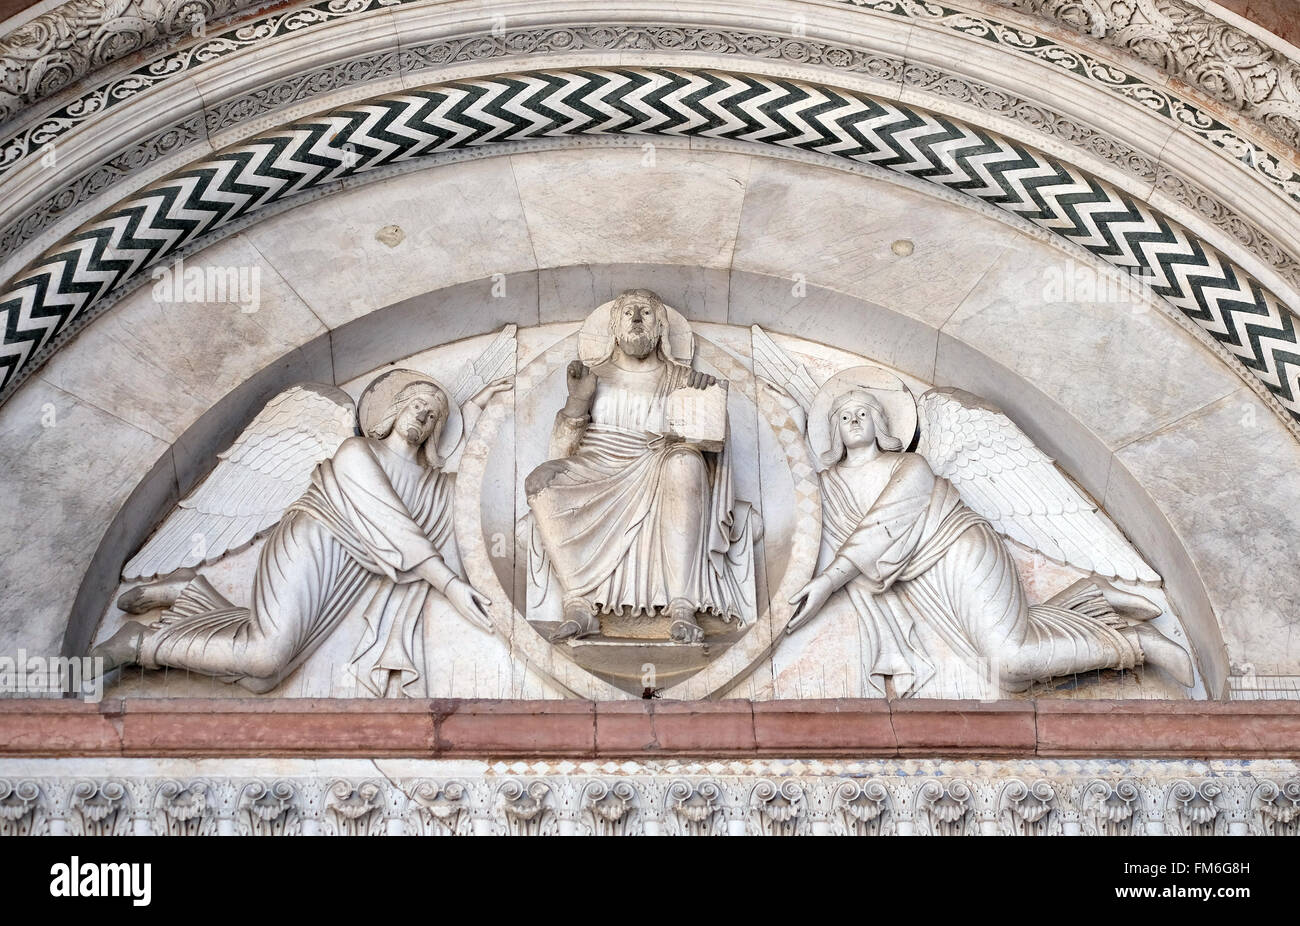 Portal der Kathedrale von St. Martin in Lucca. Lünette zeigt den Erlöser in einer Mandorla, gehalten von zwei Engeln, Lucca, Italien Stockfoto